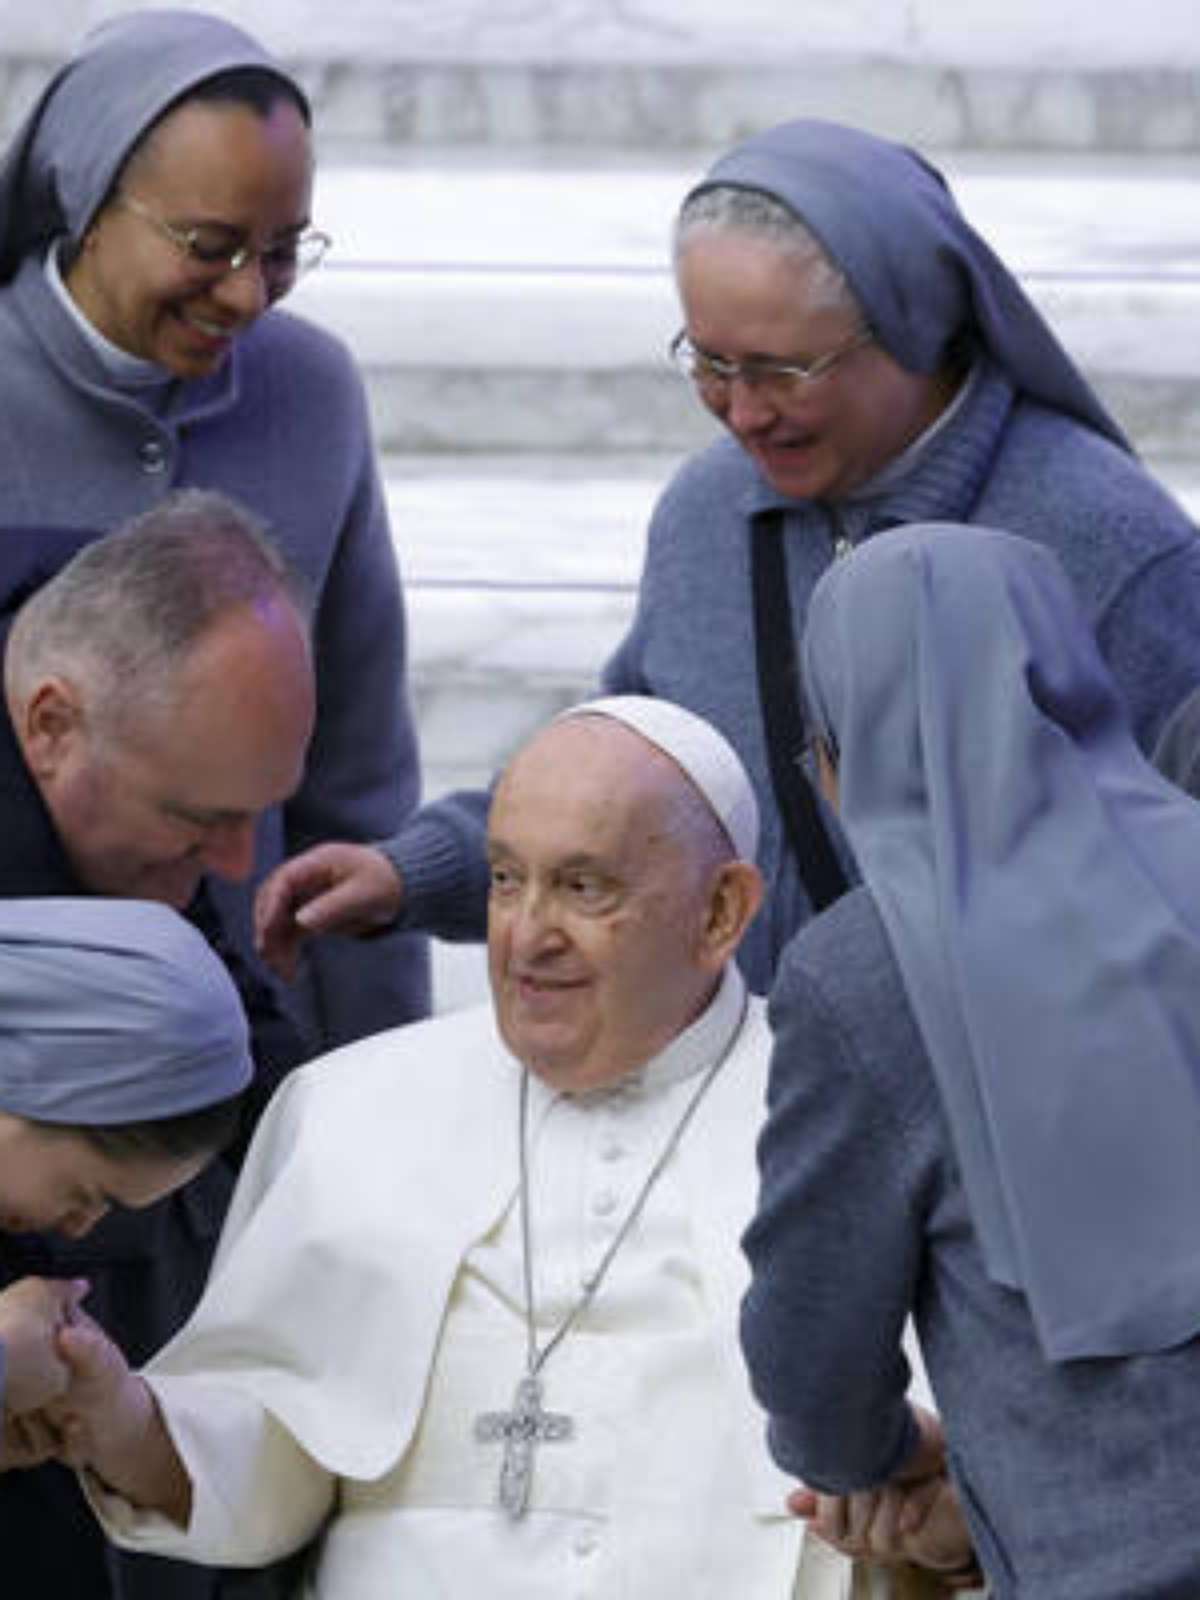 Papa Francisco diz que está com bronquite aguda infecciosa e pede orações